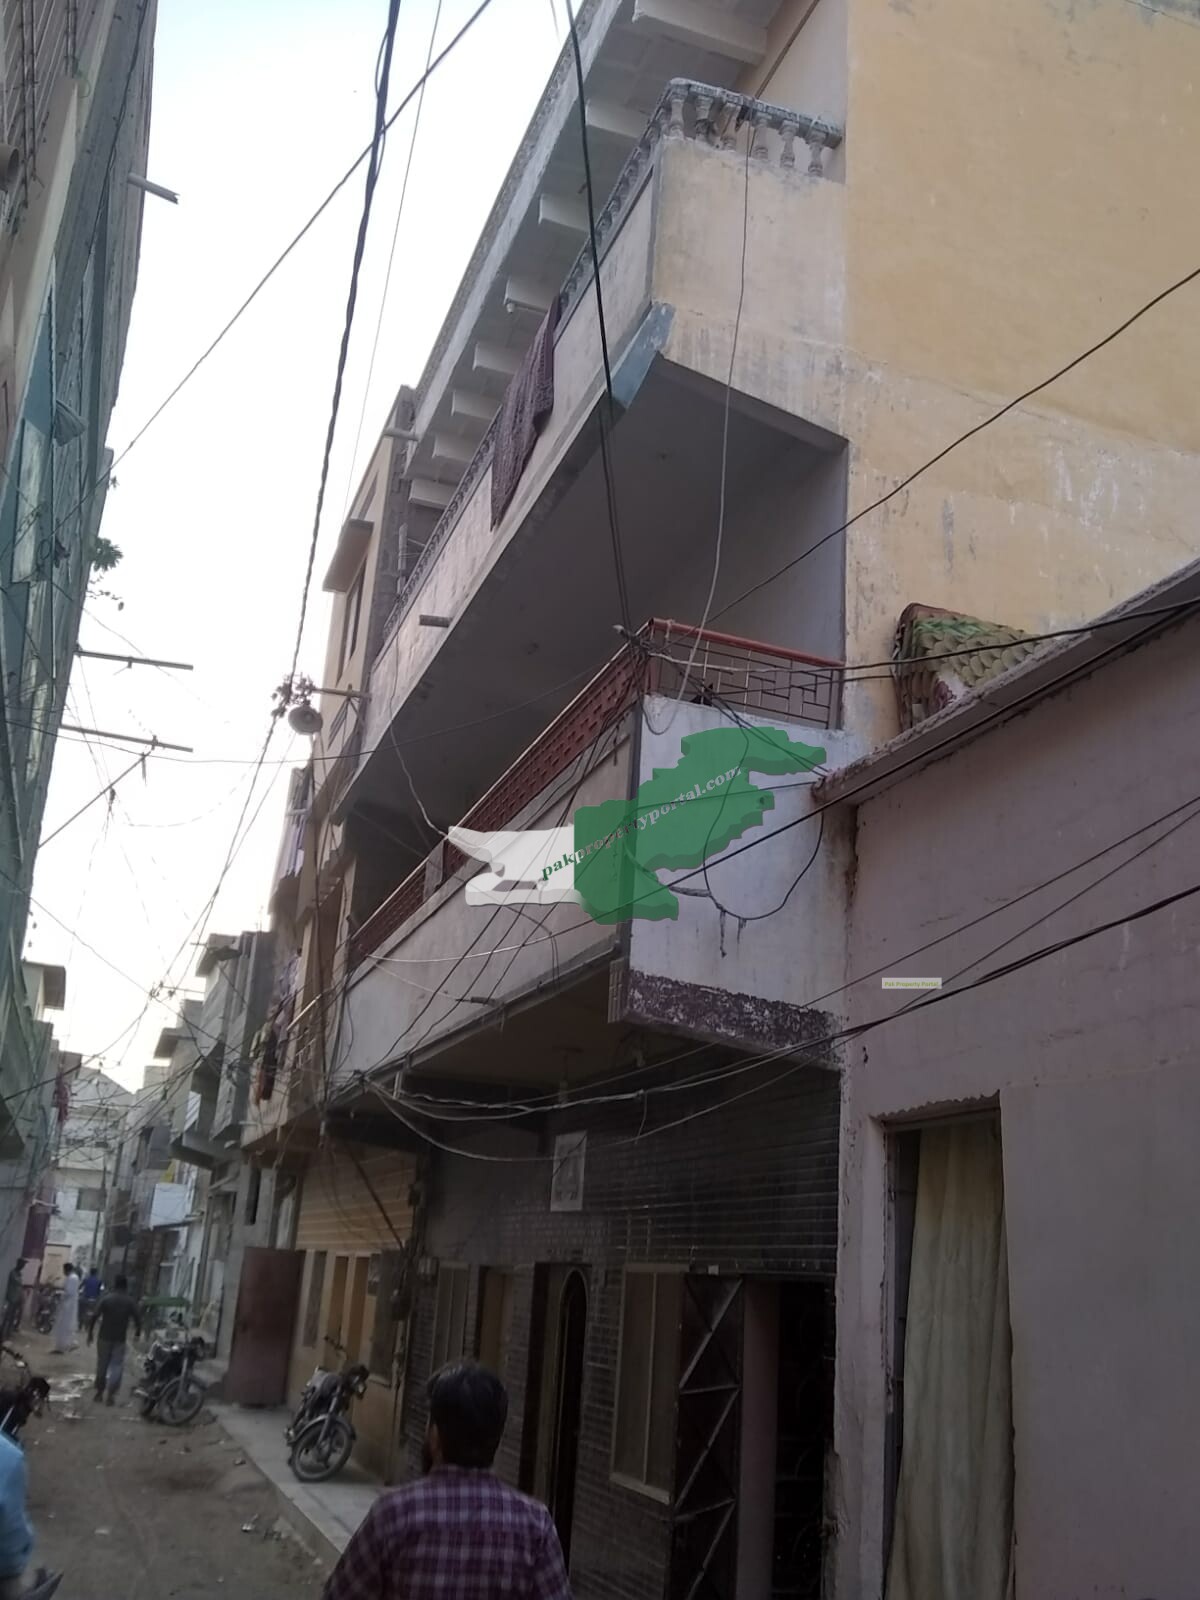 House for sale in Malir Gosiya Market Karachi